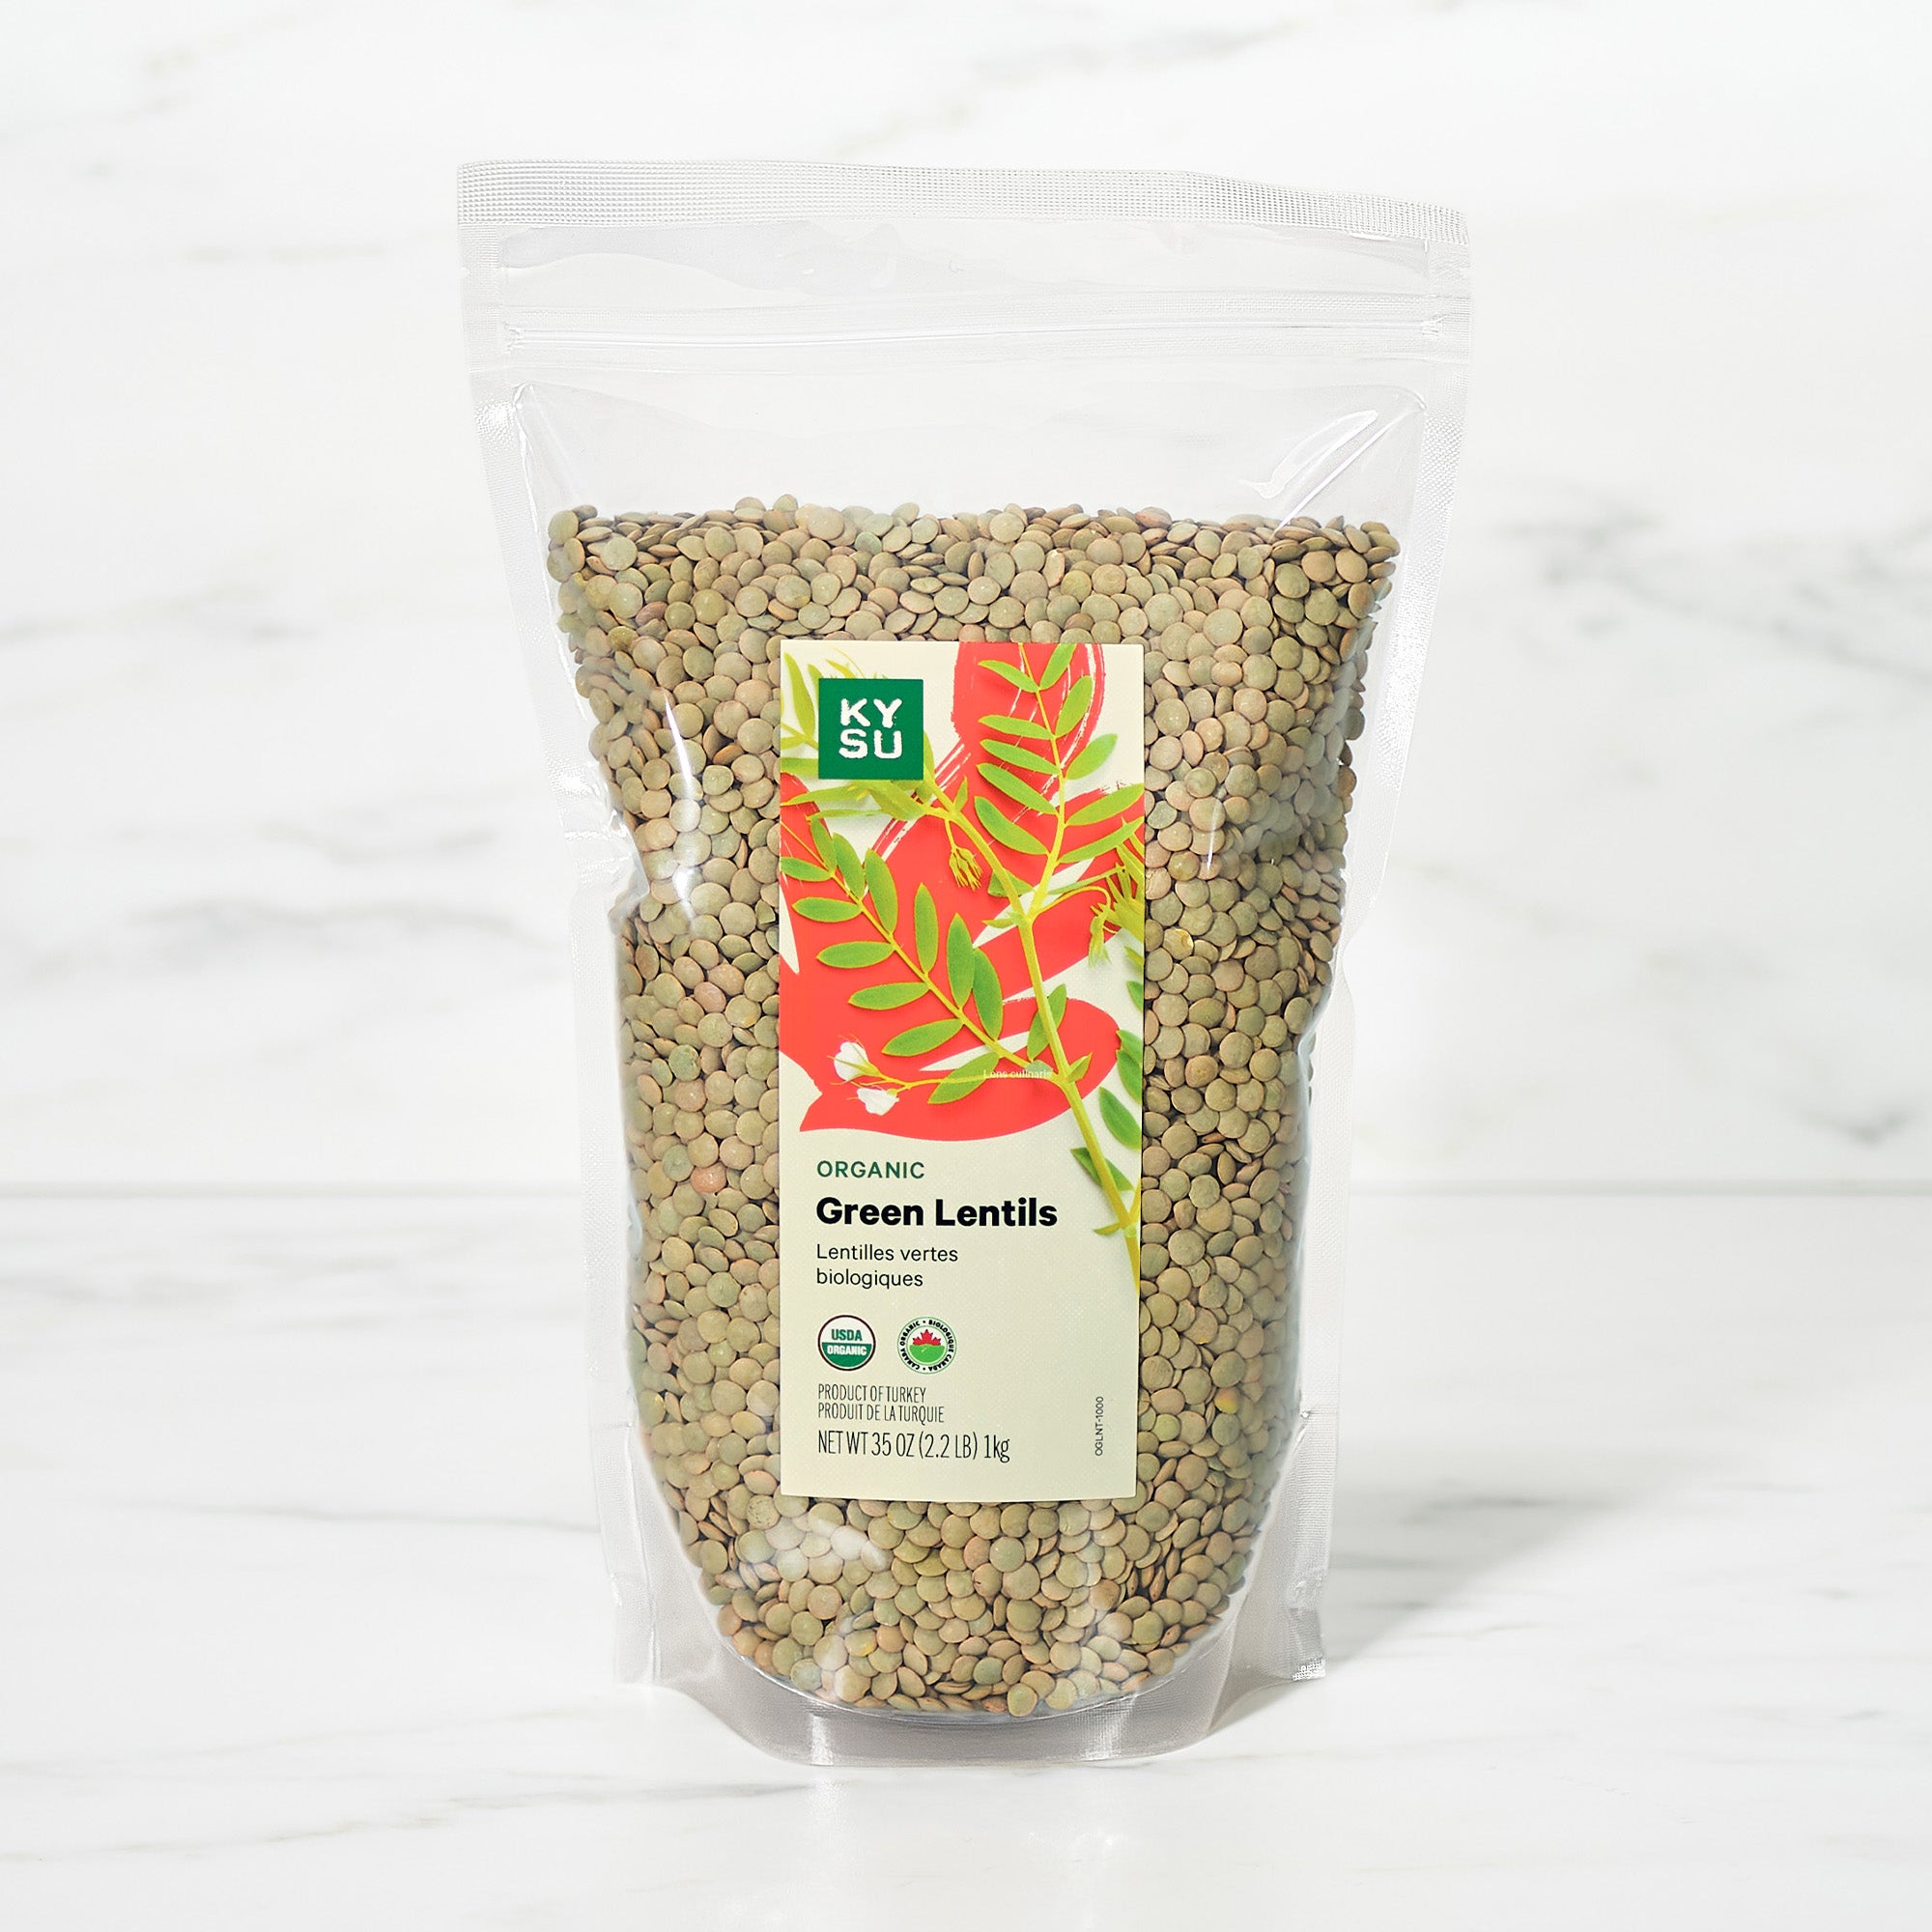 Organic green lentils, 2.2 lb